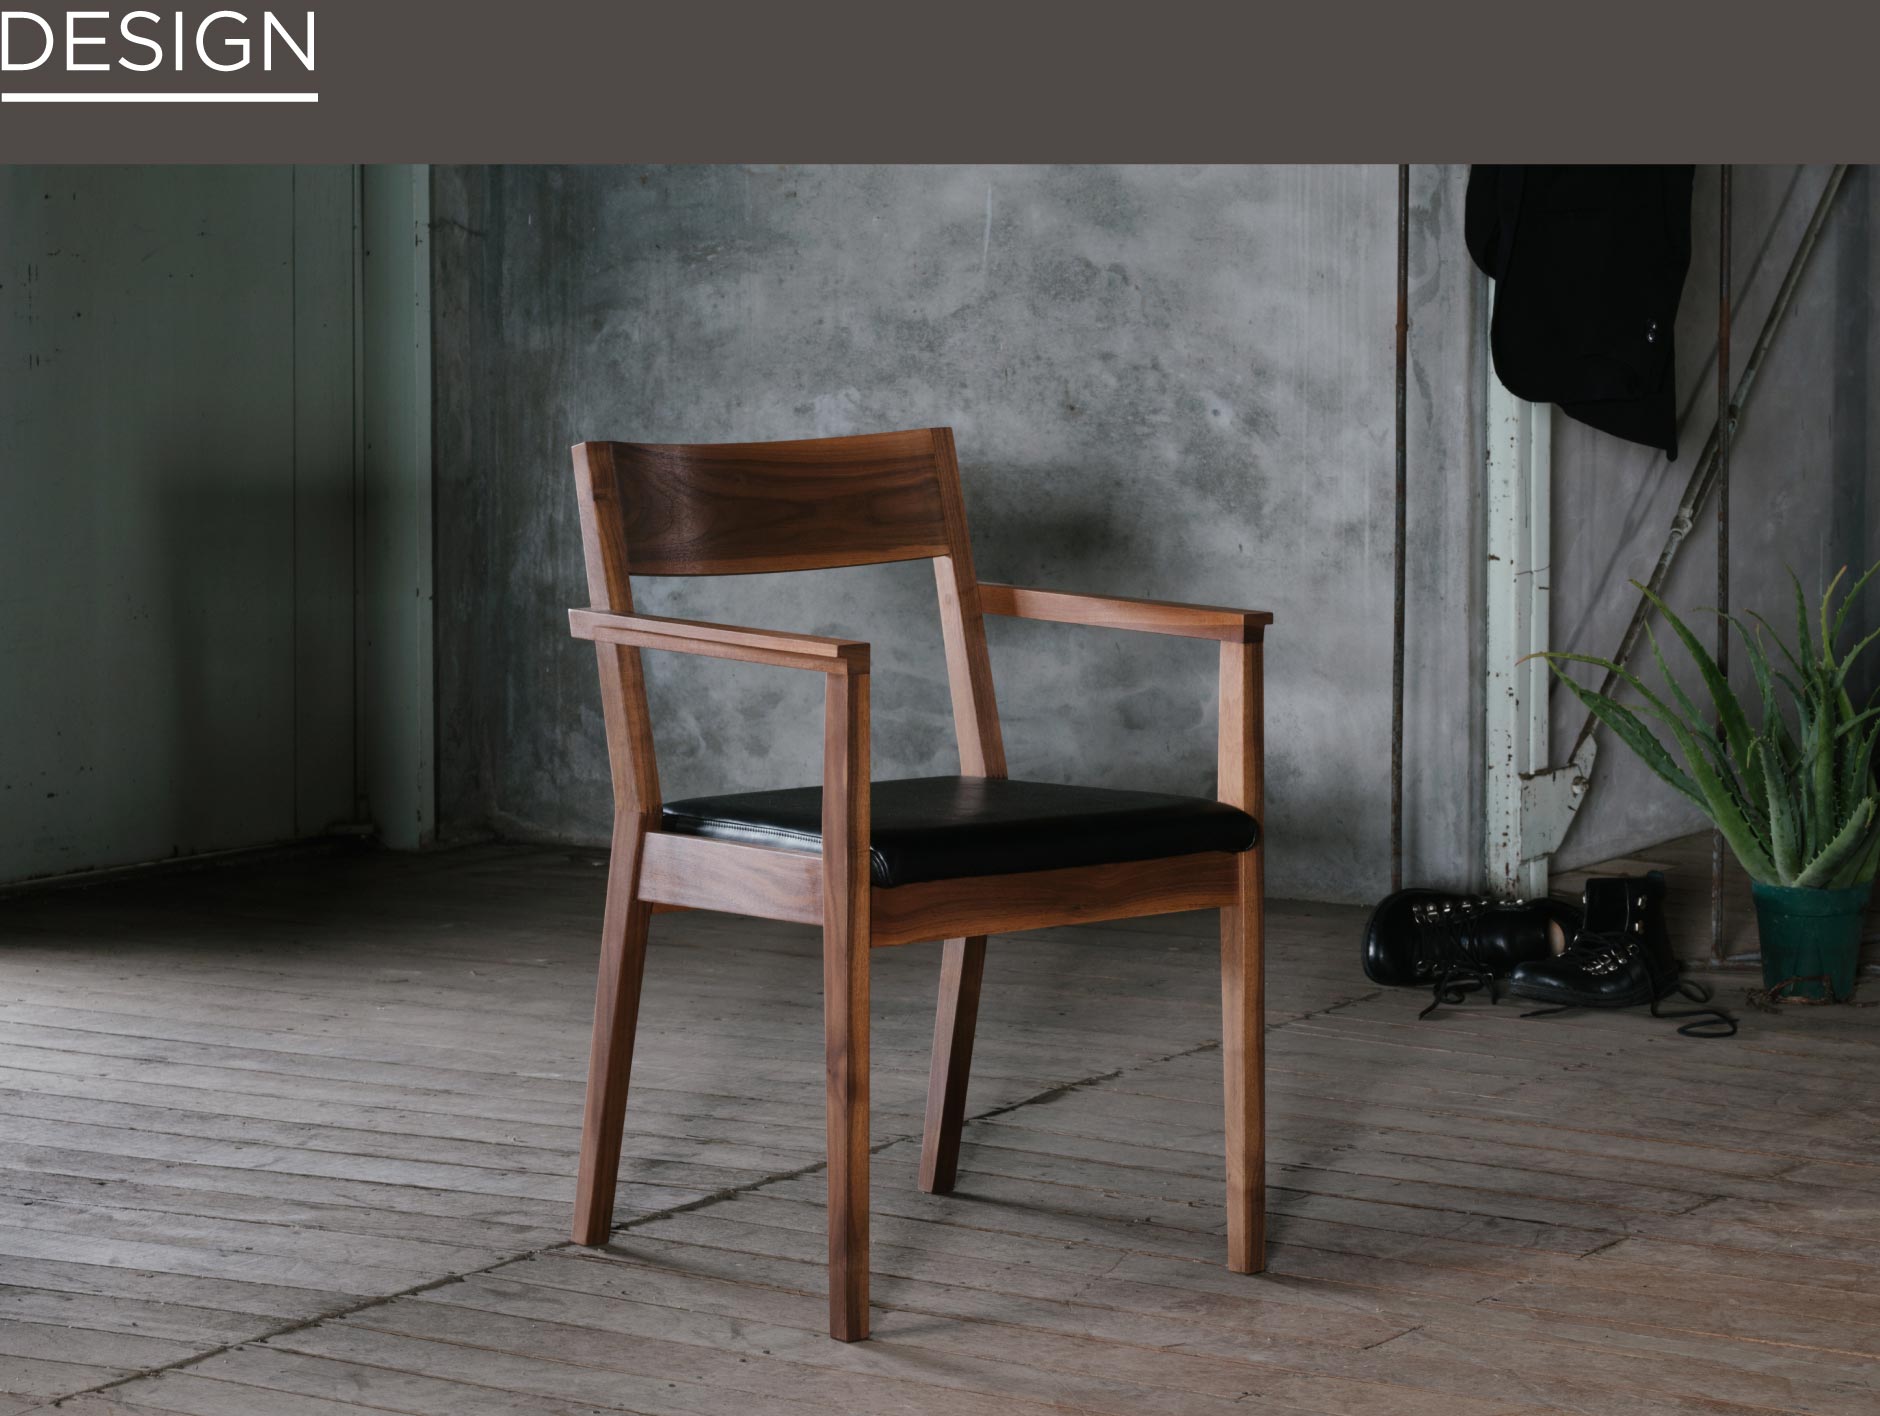 SOLIDの家具で1番目に作られた代表的なダイニングチェア。ロングアームながらもシャープなデザインでSOLID福岡店のテーブルとの相性も抜群です。